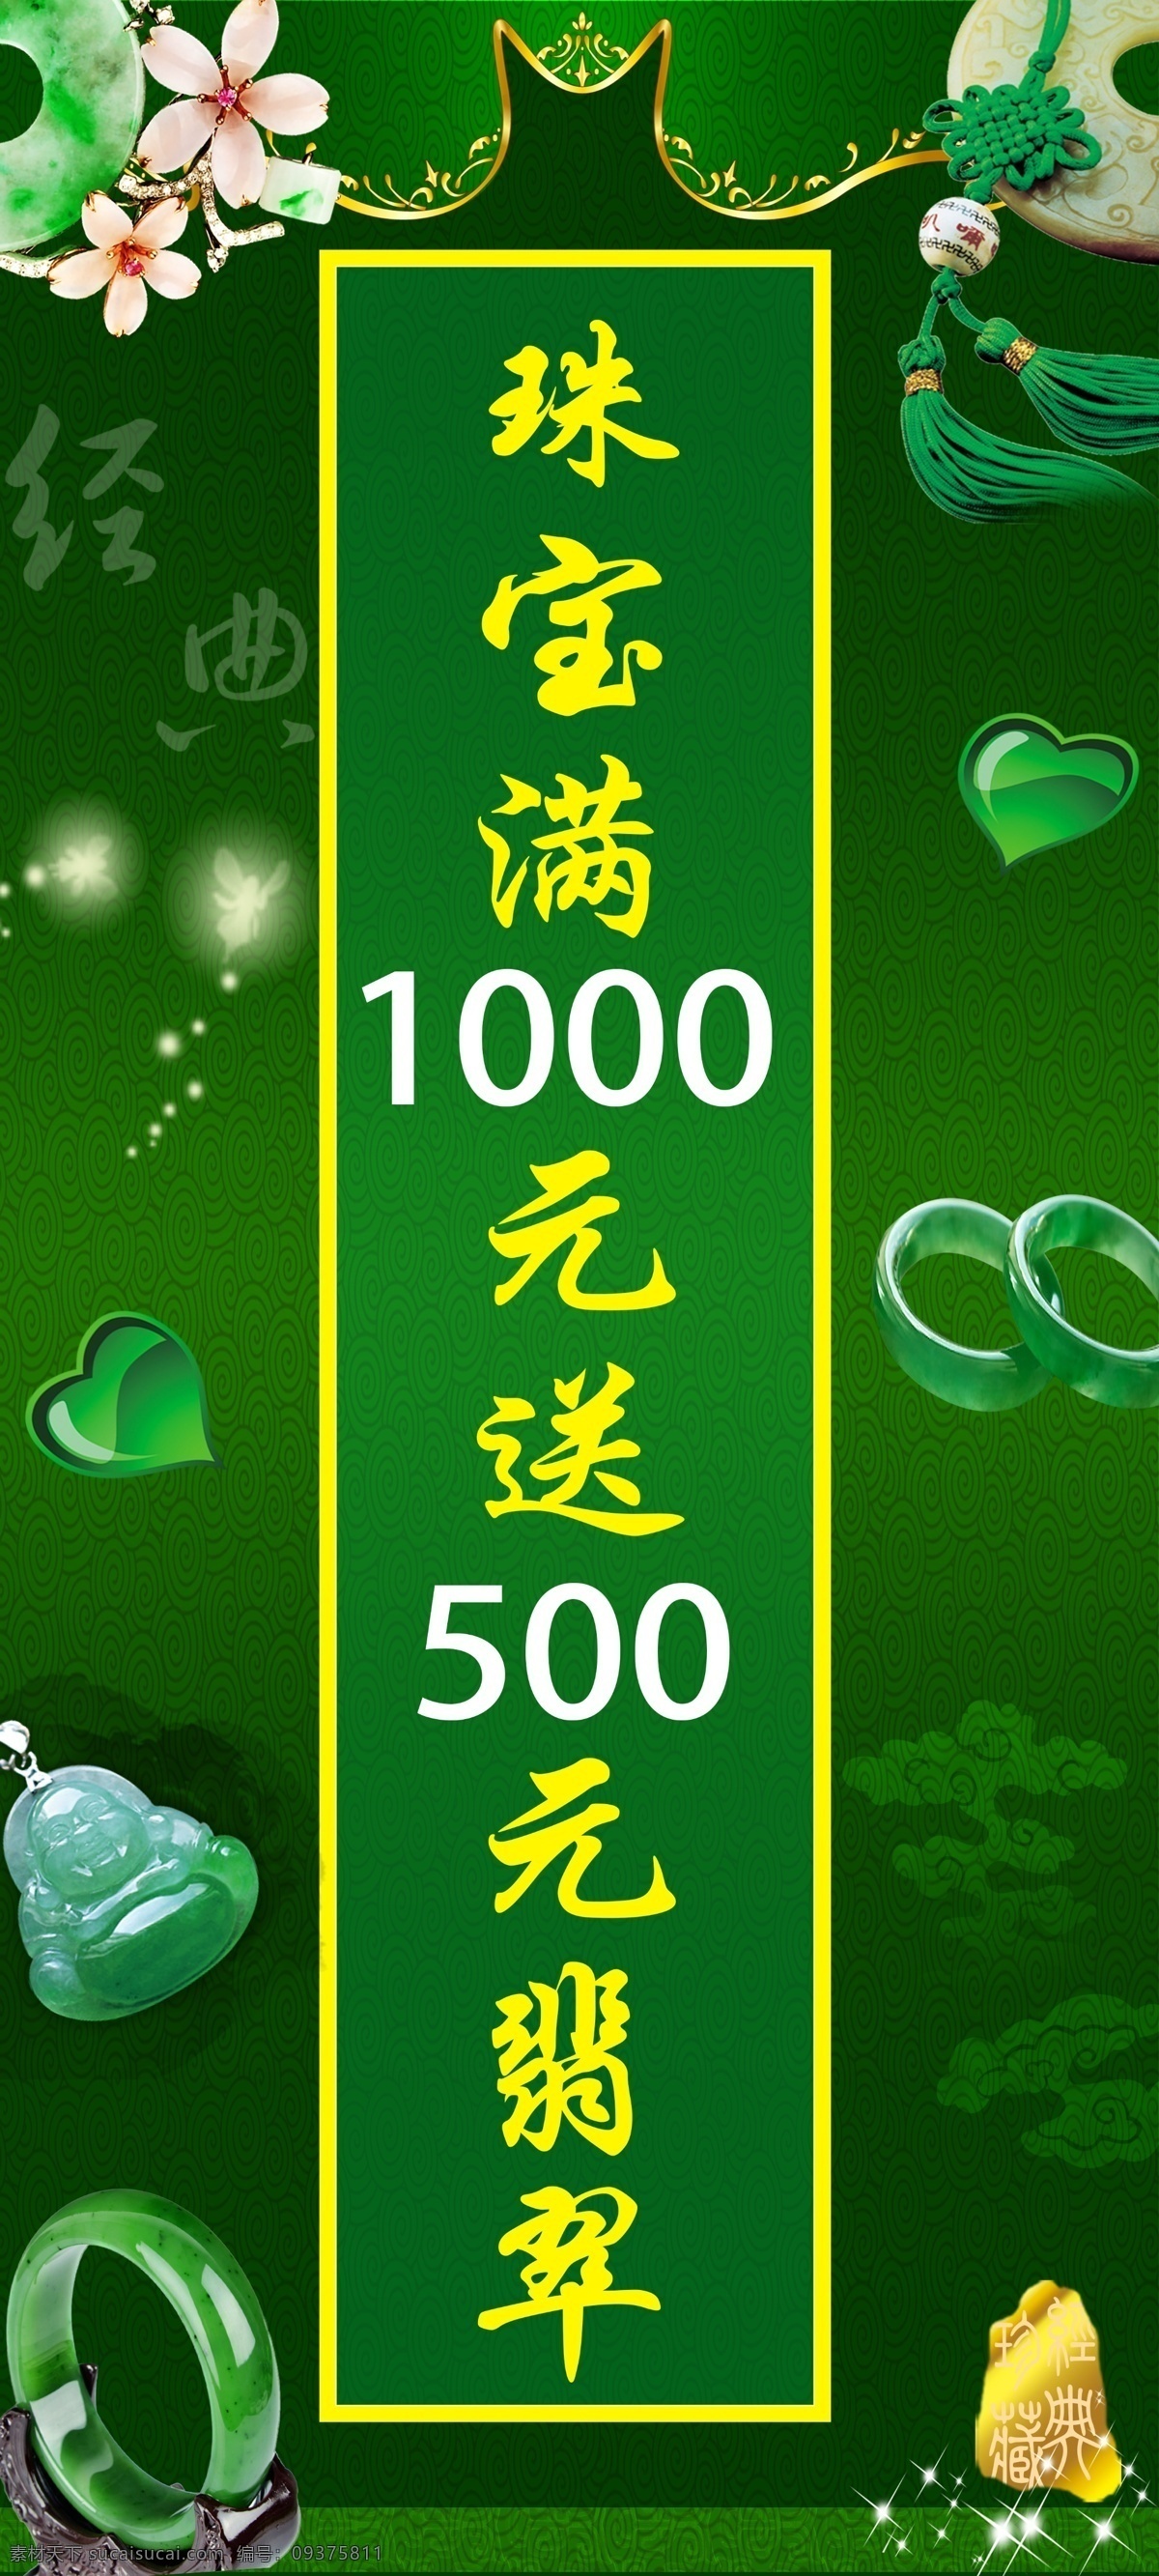 绿色素材 翡翠文化节 翡翠节 翡翠素材 绿色背景